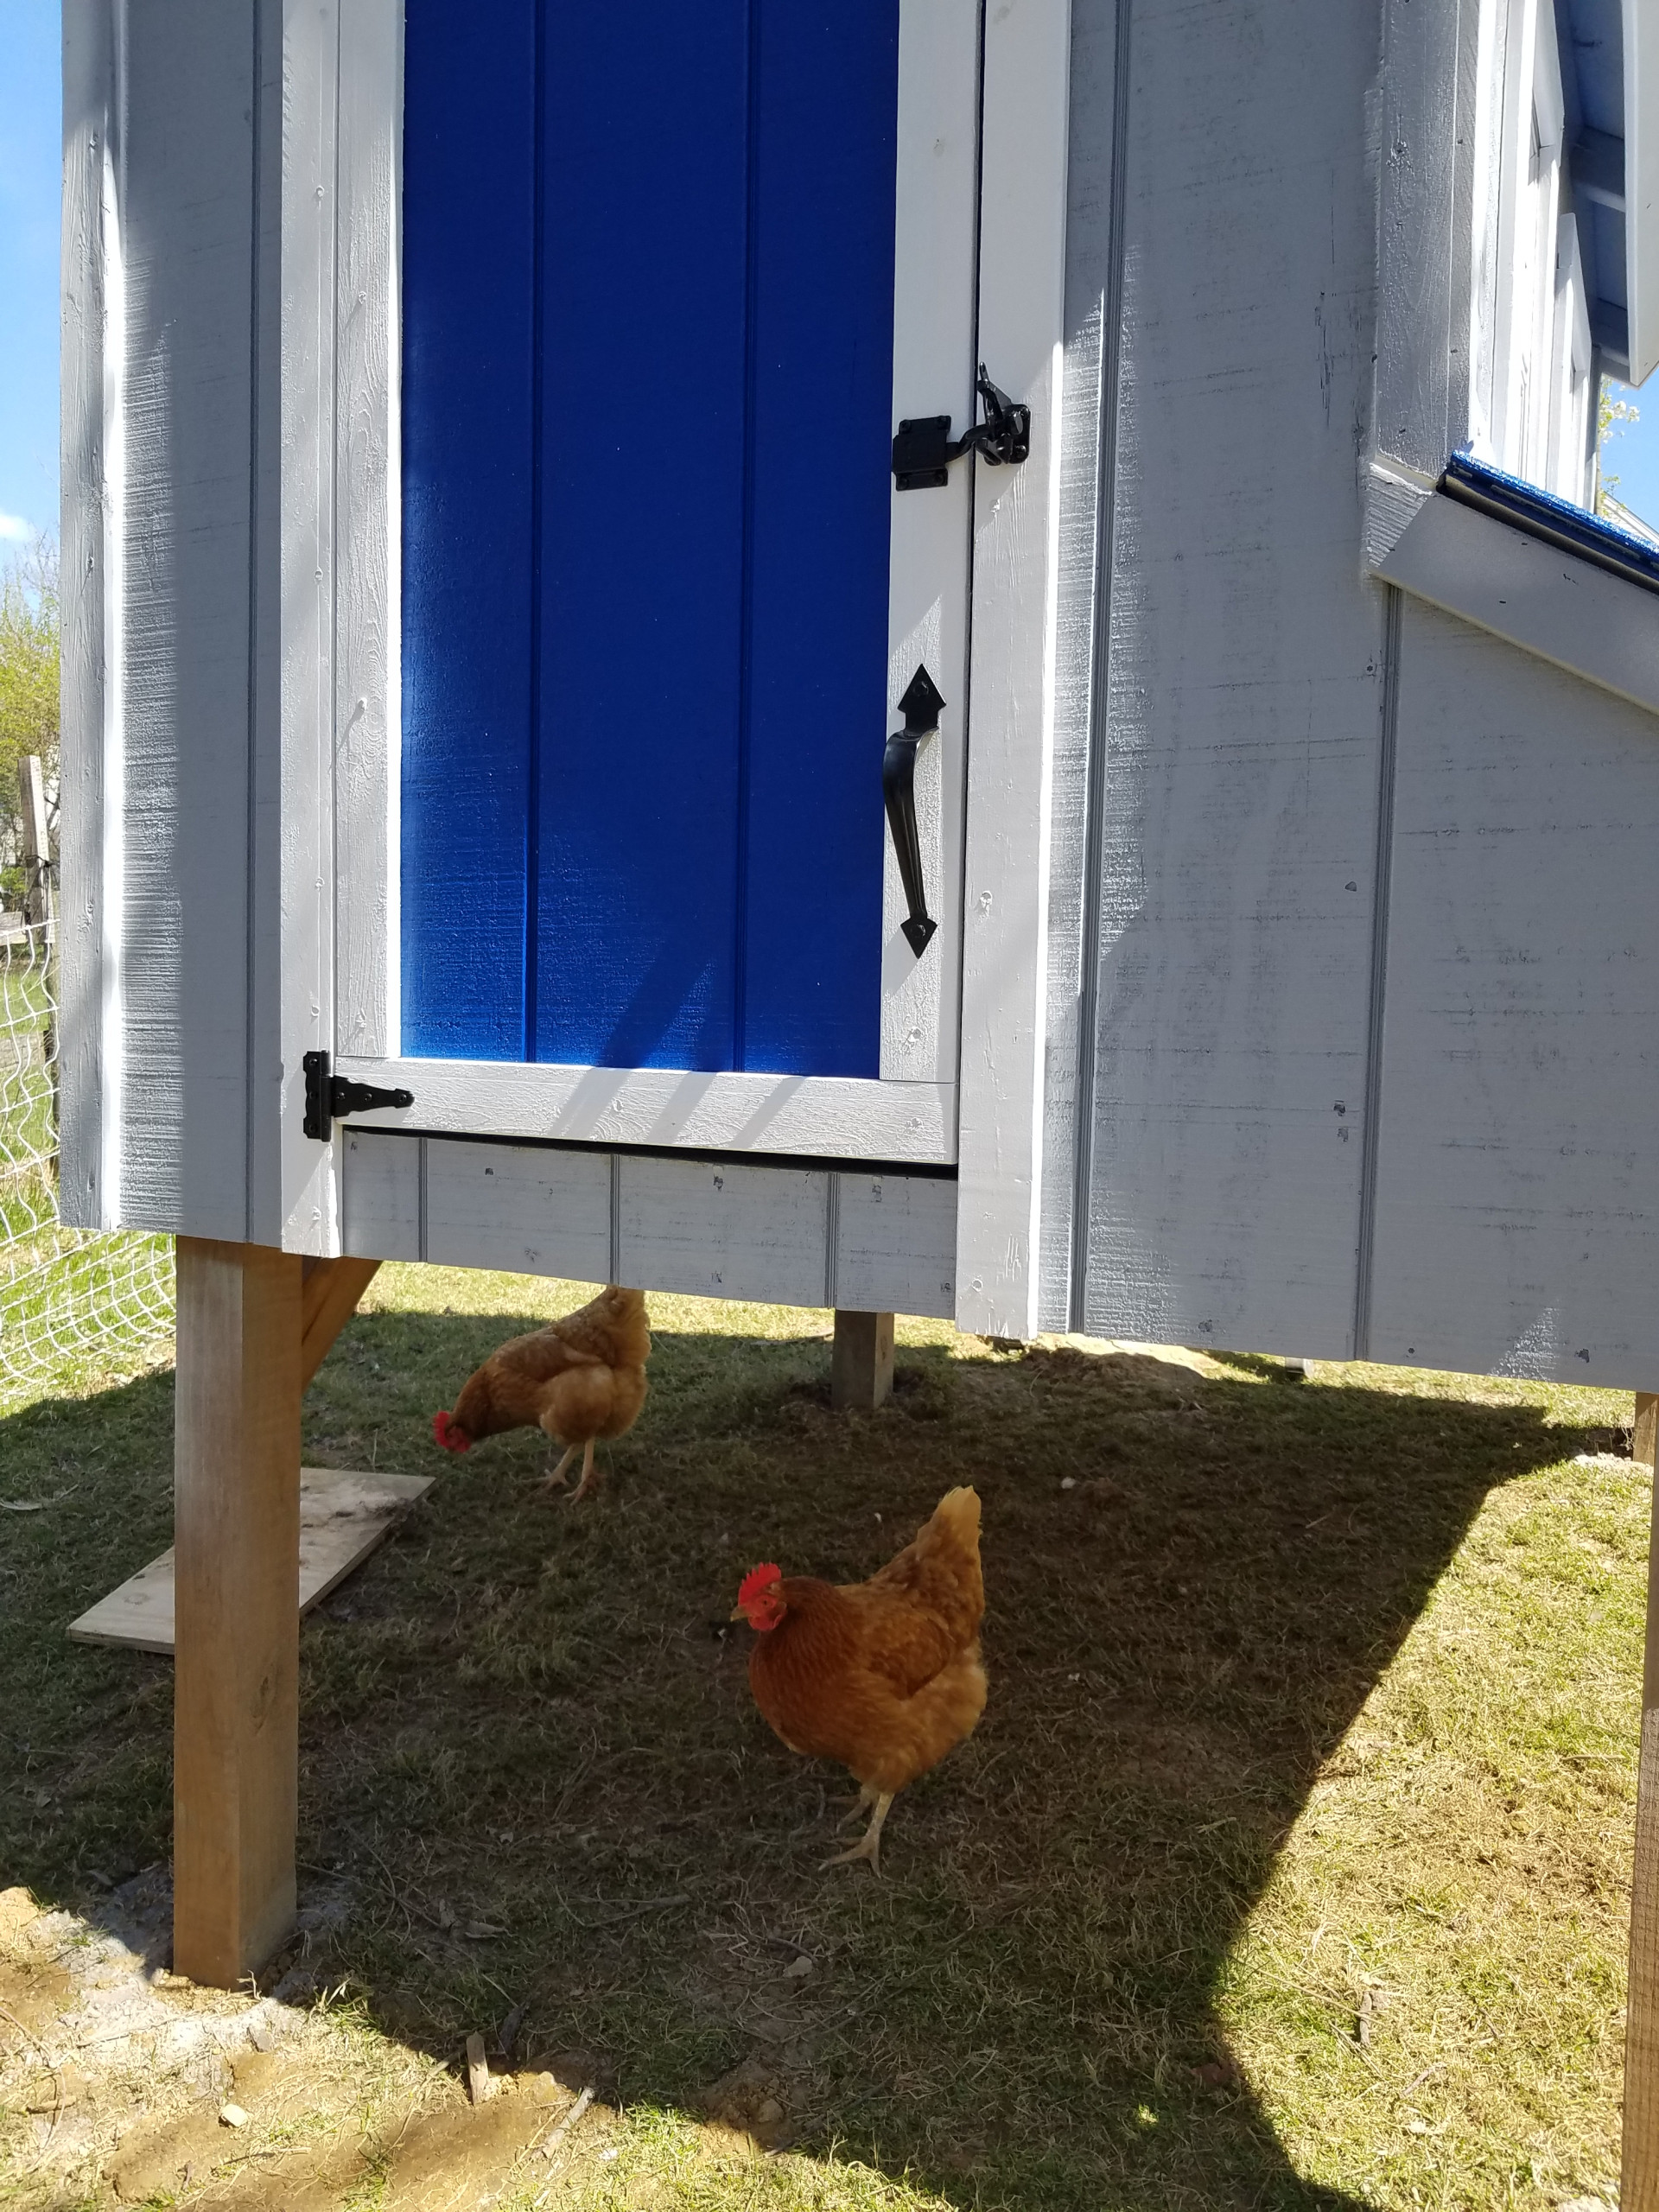 Kentucky Blue door with chicken underneath